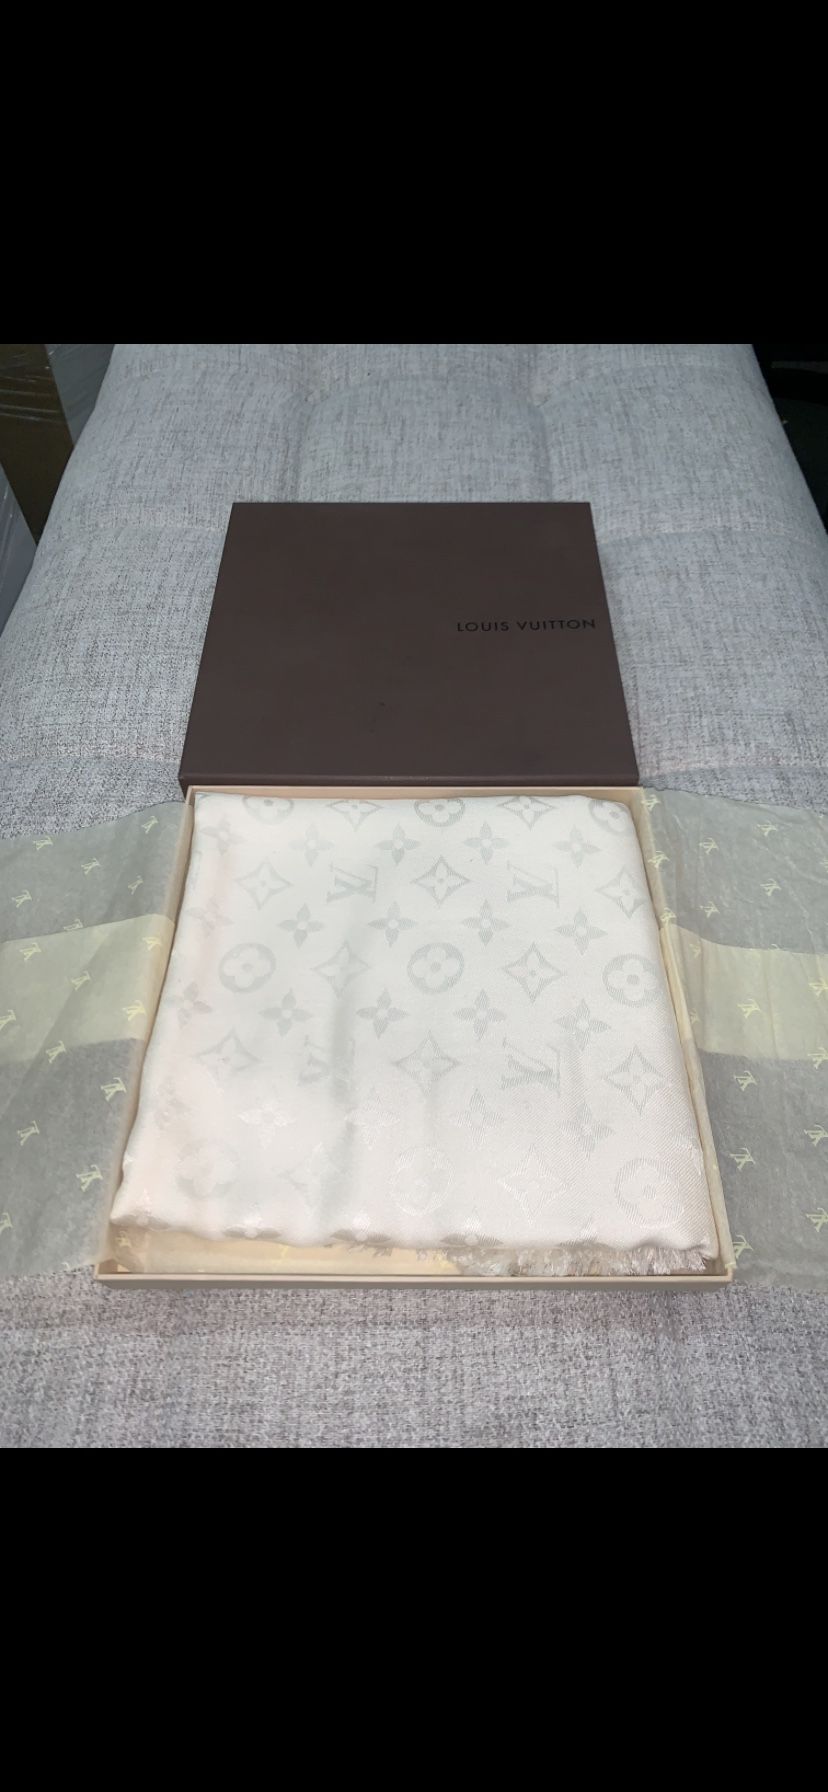 BRAND NEW in BOX Authentic LOUIS VUITTON Verone/Beige Shine Silk Monogram Shawl Scarf